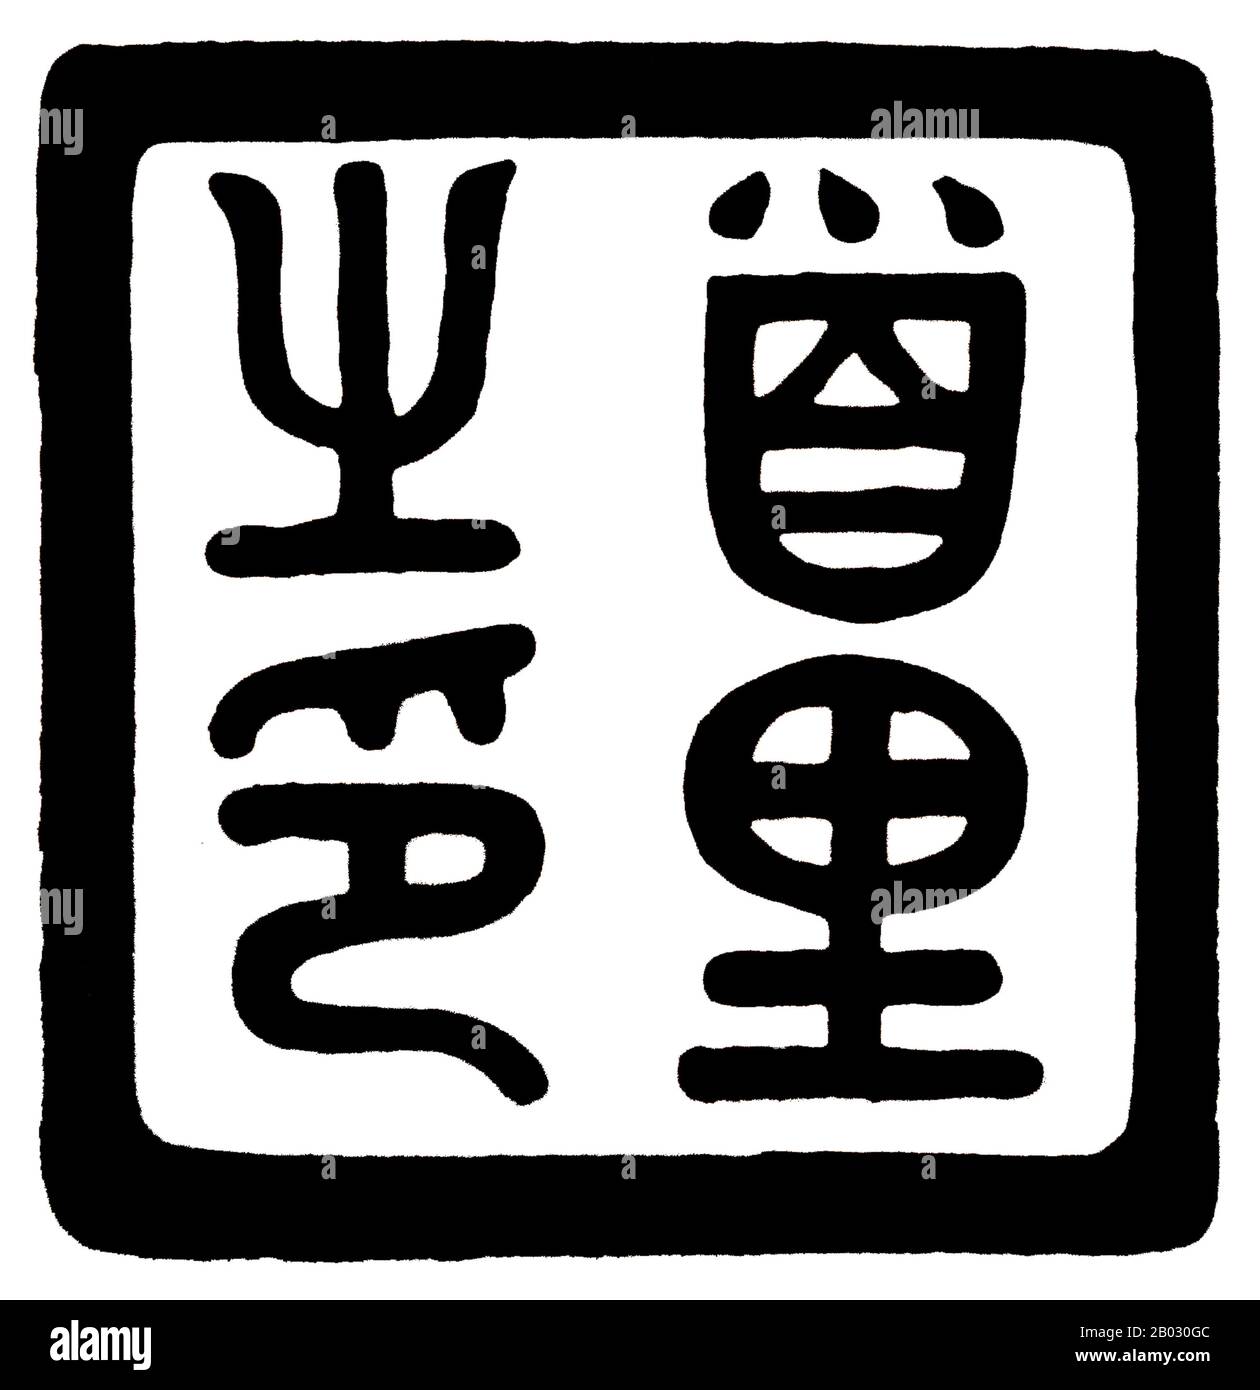 Das Ryukyu-Königreich (historischer englischer Name: Lewchew, Luchu oder Loochoo) war ein unabhängiges Königreich, das die meisten Ryukyu-Inseln vom 15. Bis 19. Jahrhundert beherrschte. Die Könige von Ryukyu vereinheitlichten die Insel Okinawa und dehnten das Königreich auf die Amami-Inseln in der heutigen Präfektur Kagoshima und auf die Sakishima-Inseln in der Nähe Taiwans aus. Trotz seiner geringen Größe spielte das Königreich eine zentrale Rolle in den maritimen Handelsnetzen des mittelalterlichen Ost- und Südostasiens. Stockfoto